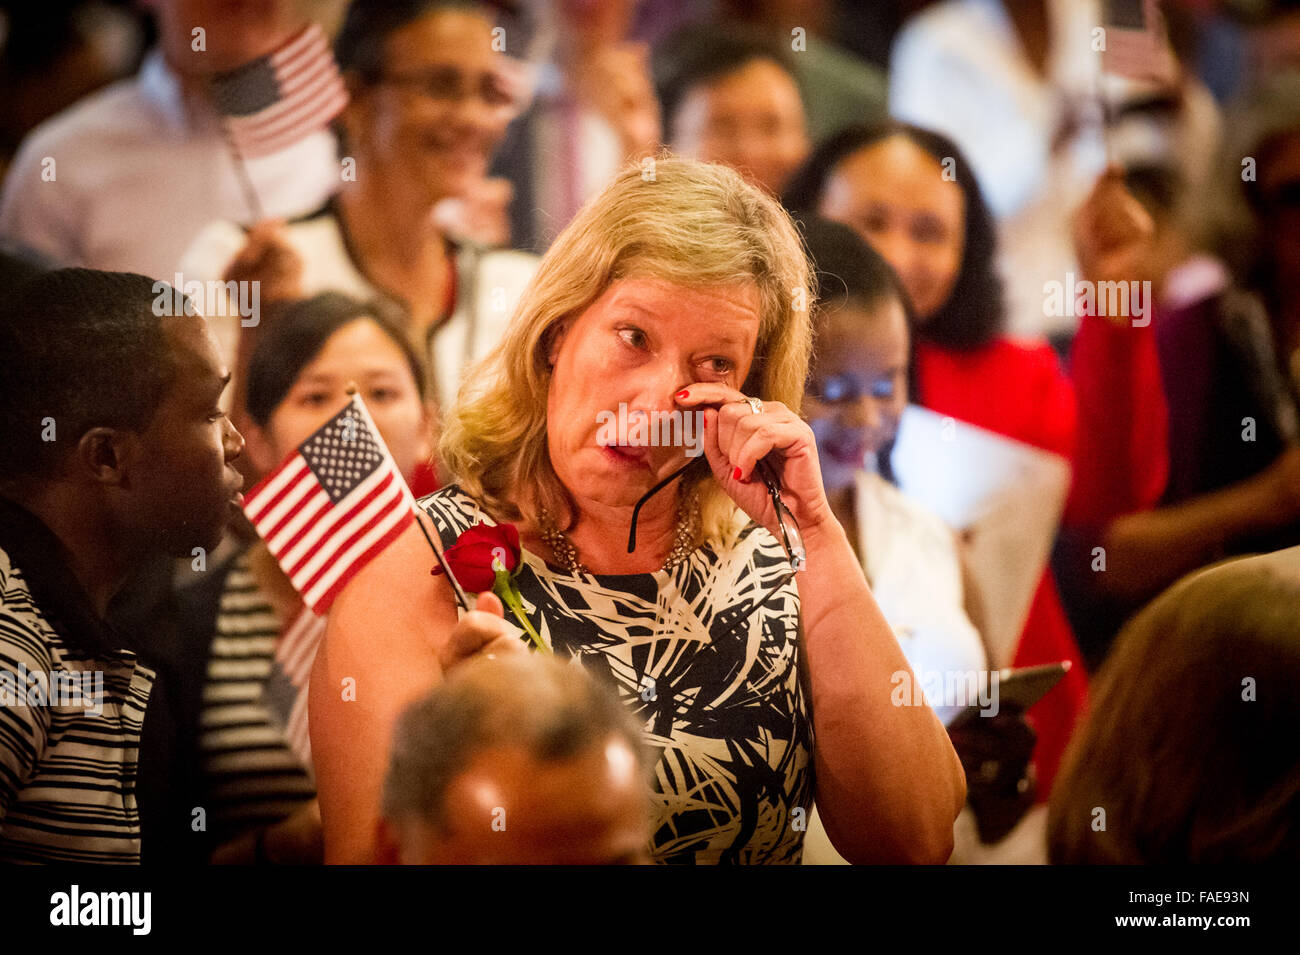 Femme pleurant et holding American flag Banque D'Images